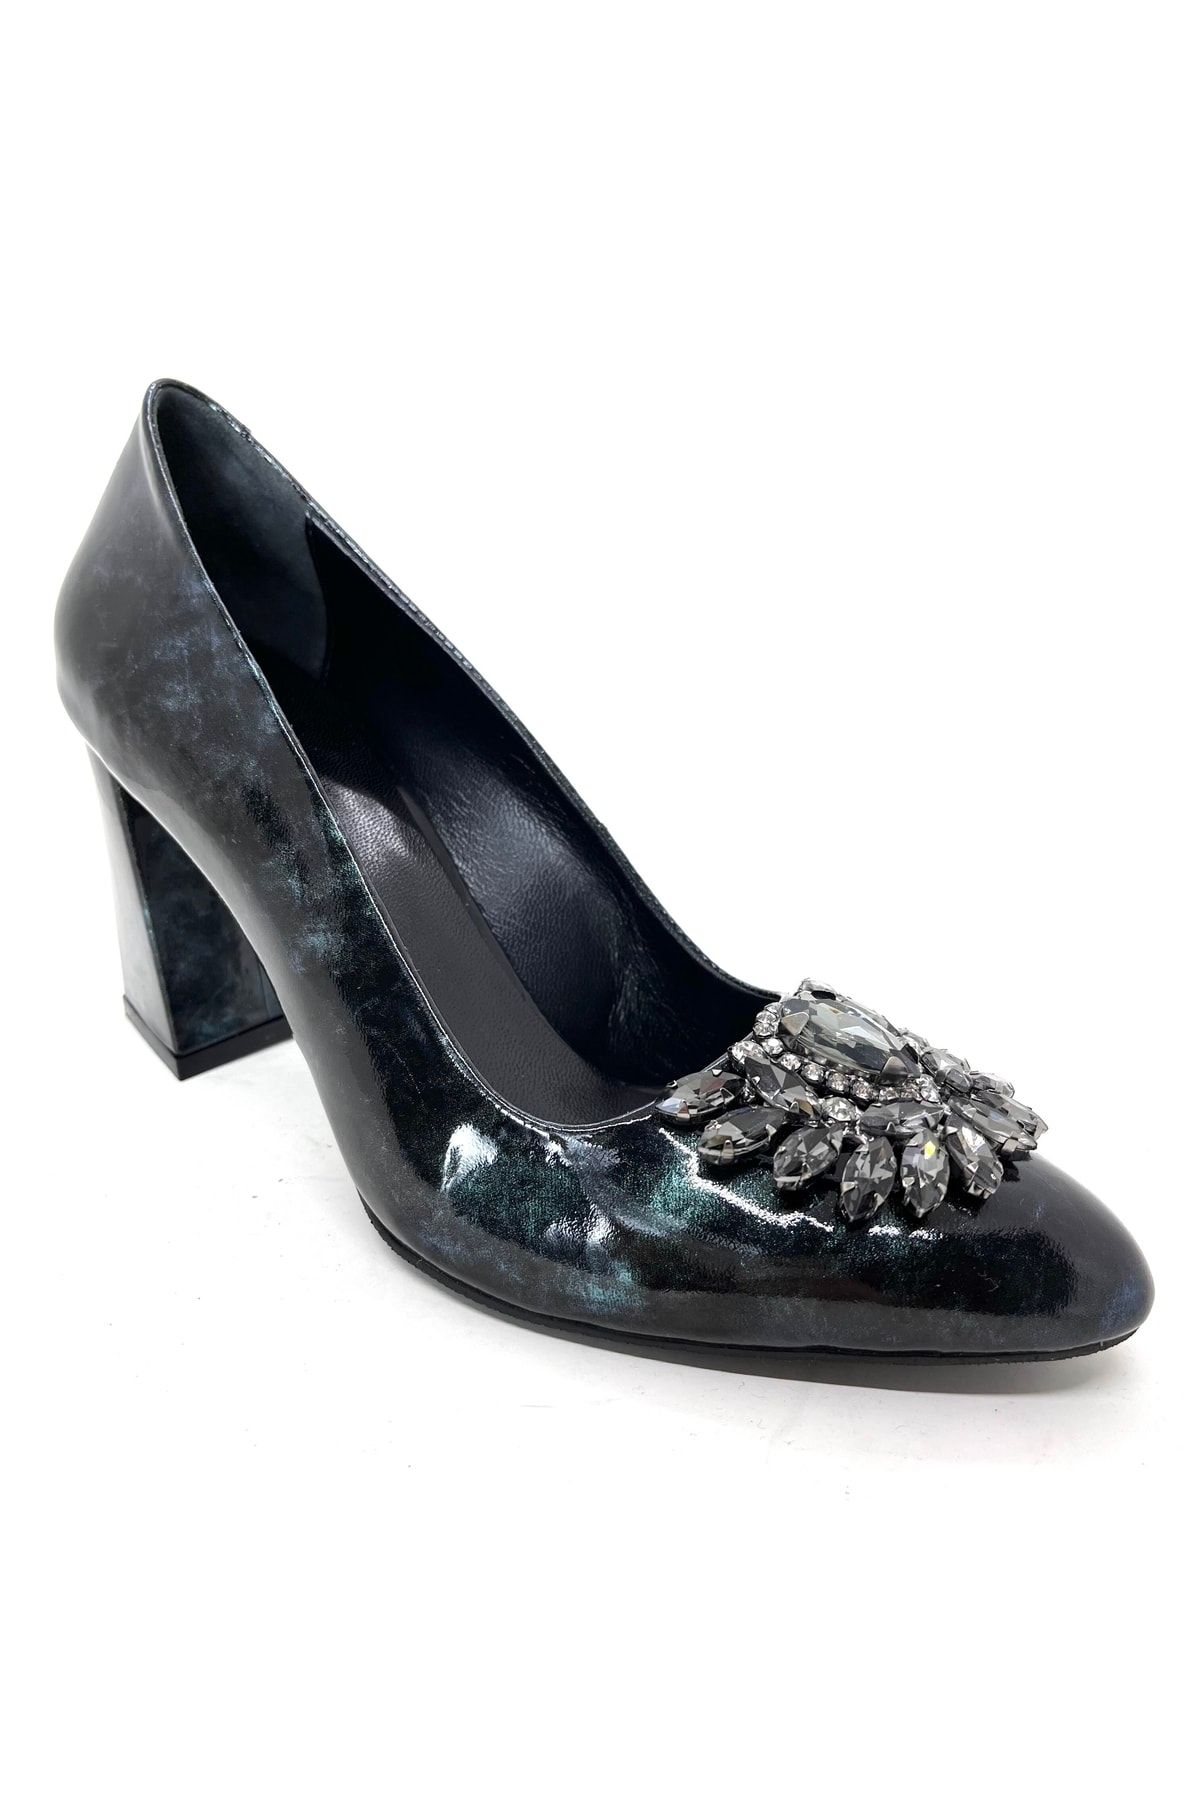 D&A İzland Shoes Kadın Şık Siyah Renkli Efektli Hakiki Derili Topuklu Ayakkabı